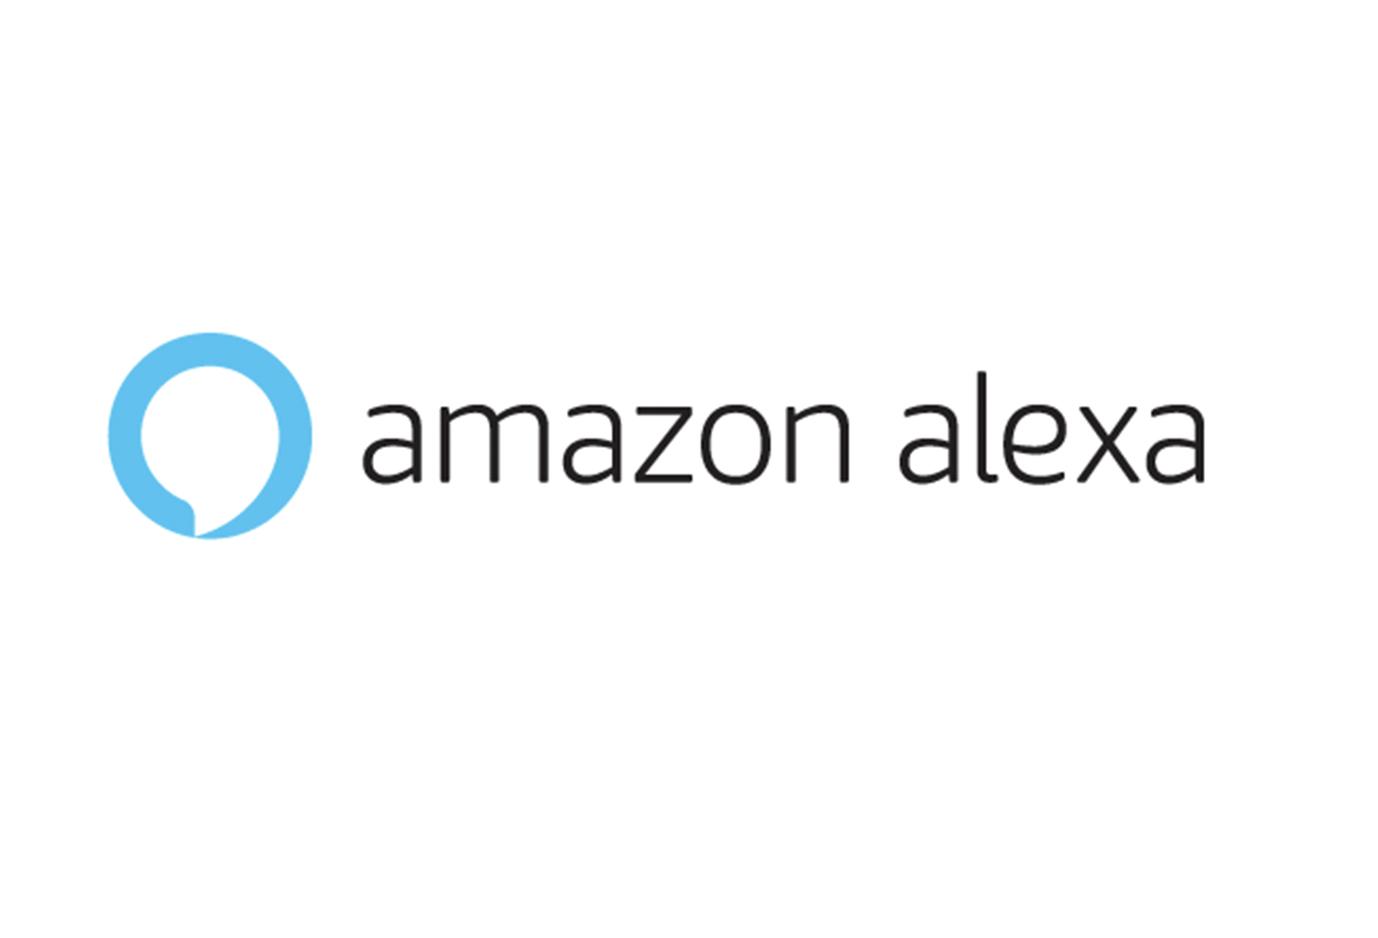 語音助理答覆更人性 亞馬遜開發新技術讓Alexa可模仿已故摯親說話